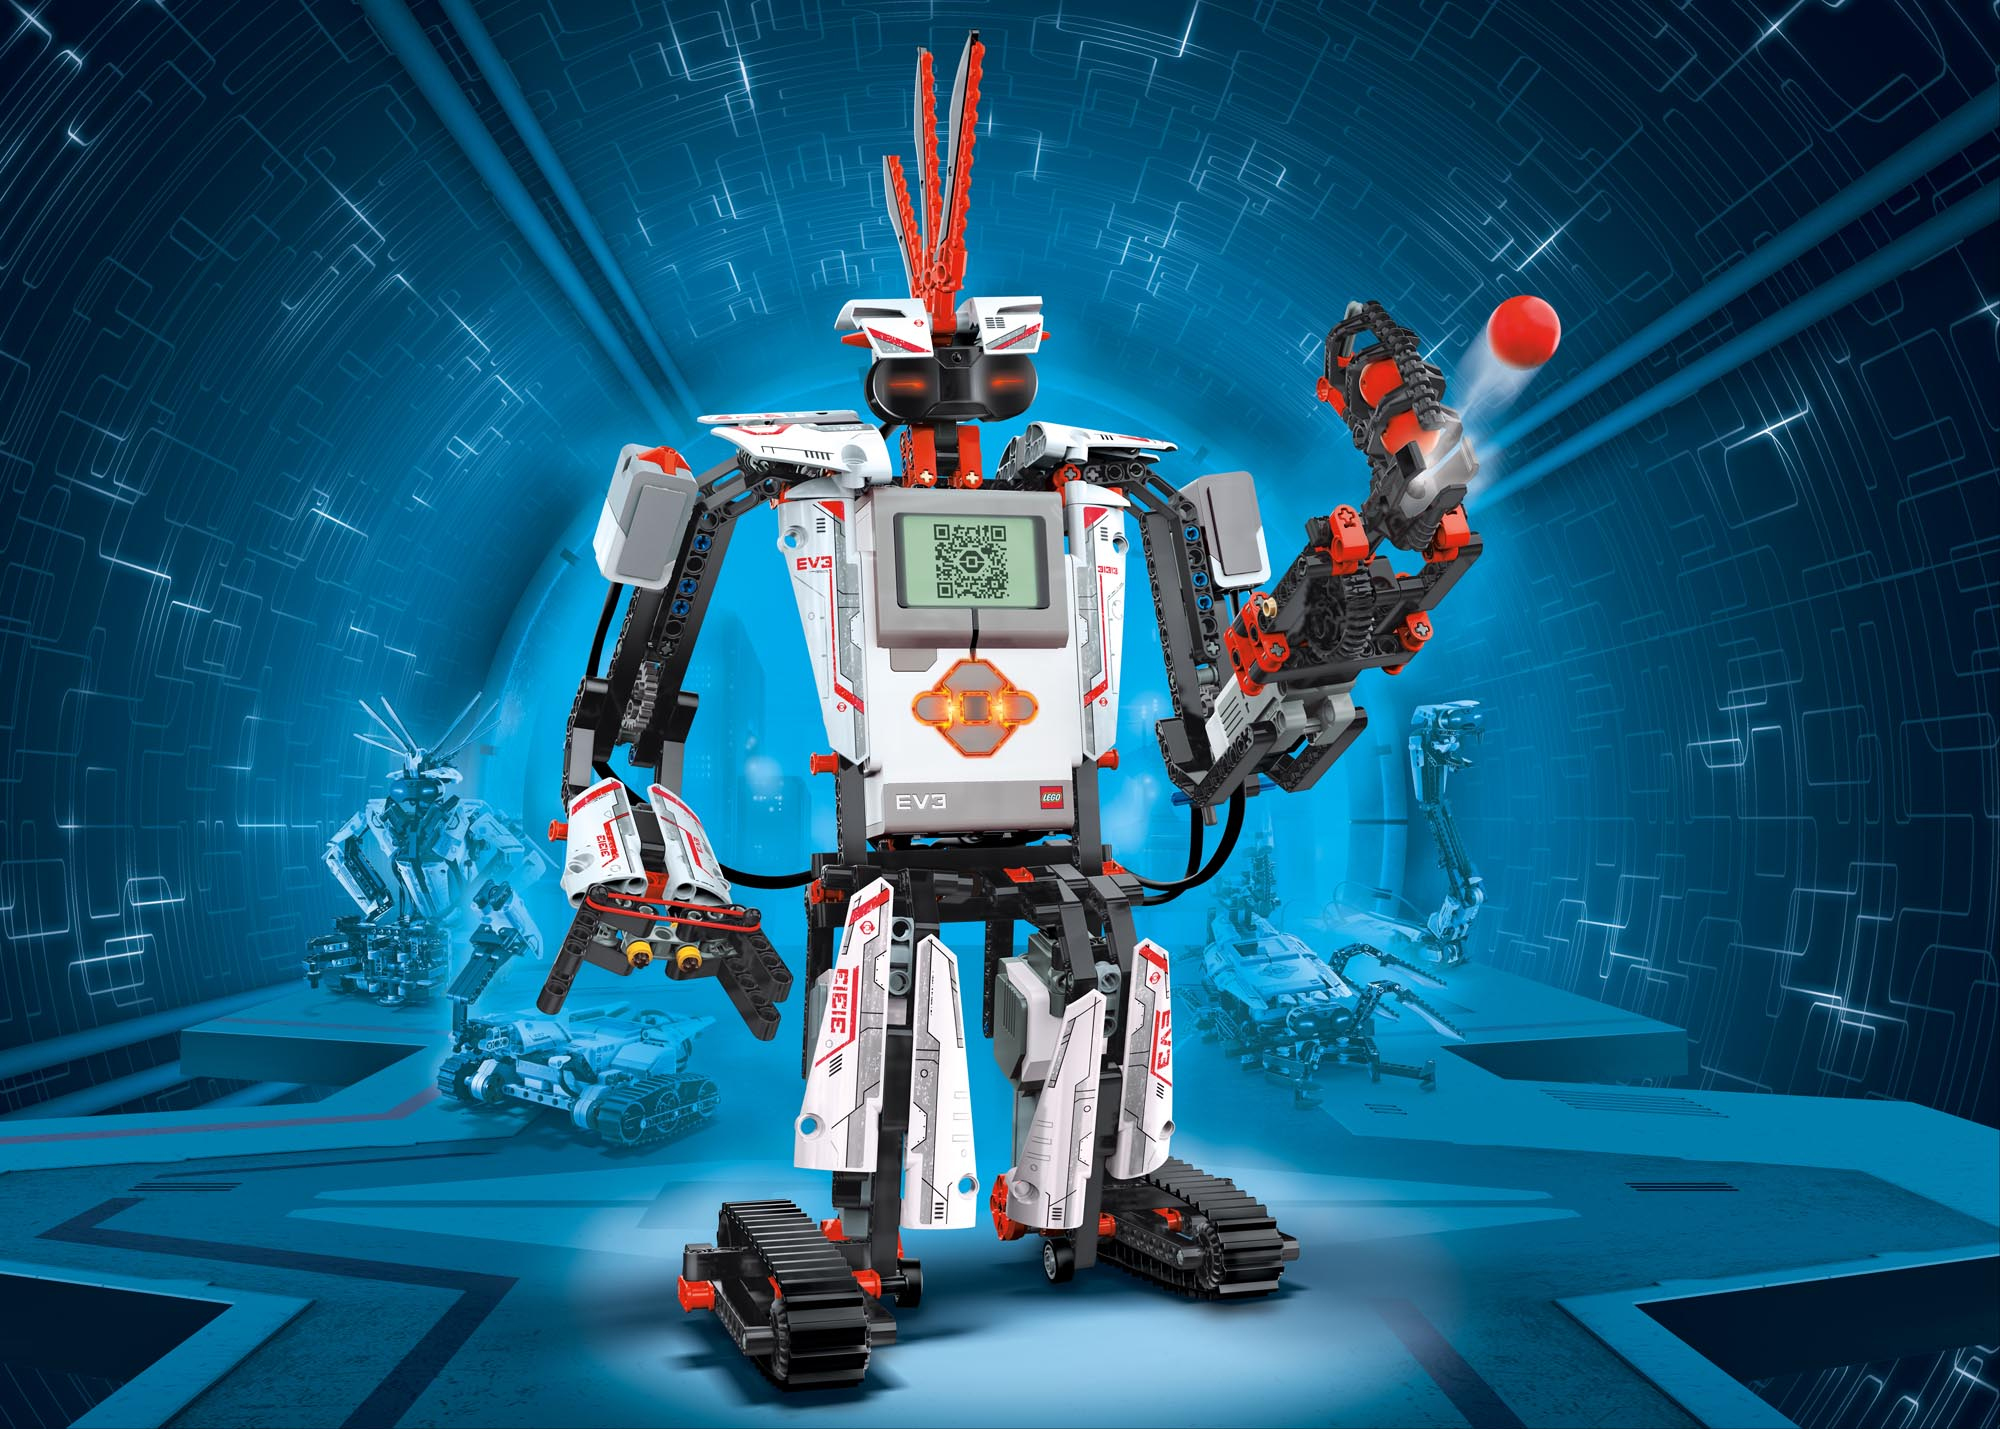 سلسلة روبوتات ليغو: تعرف على روبوتات ليغو